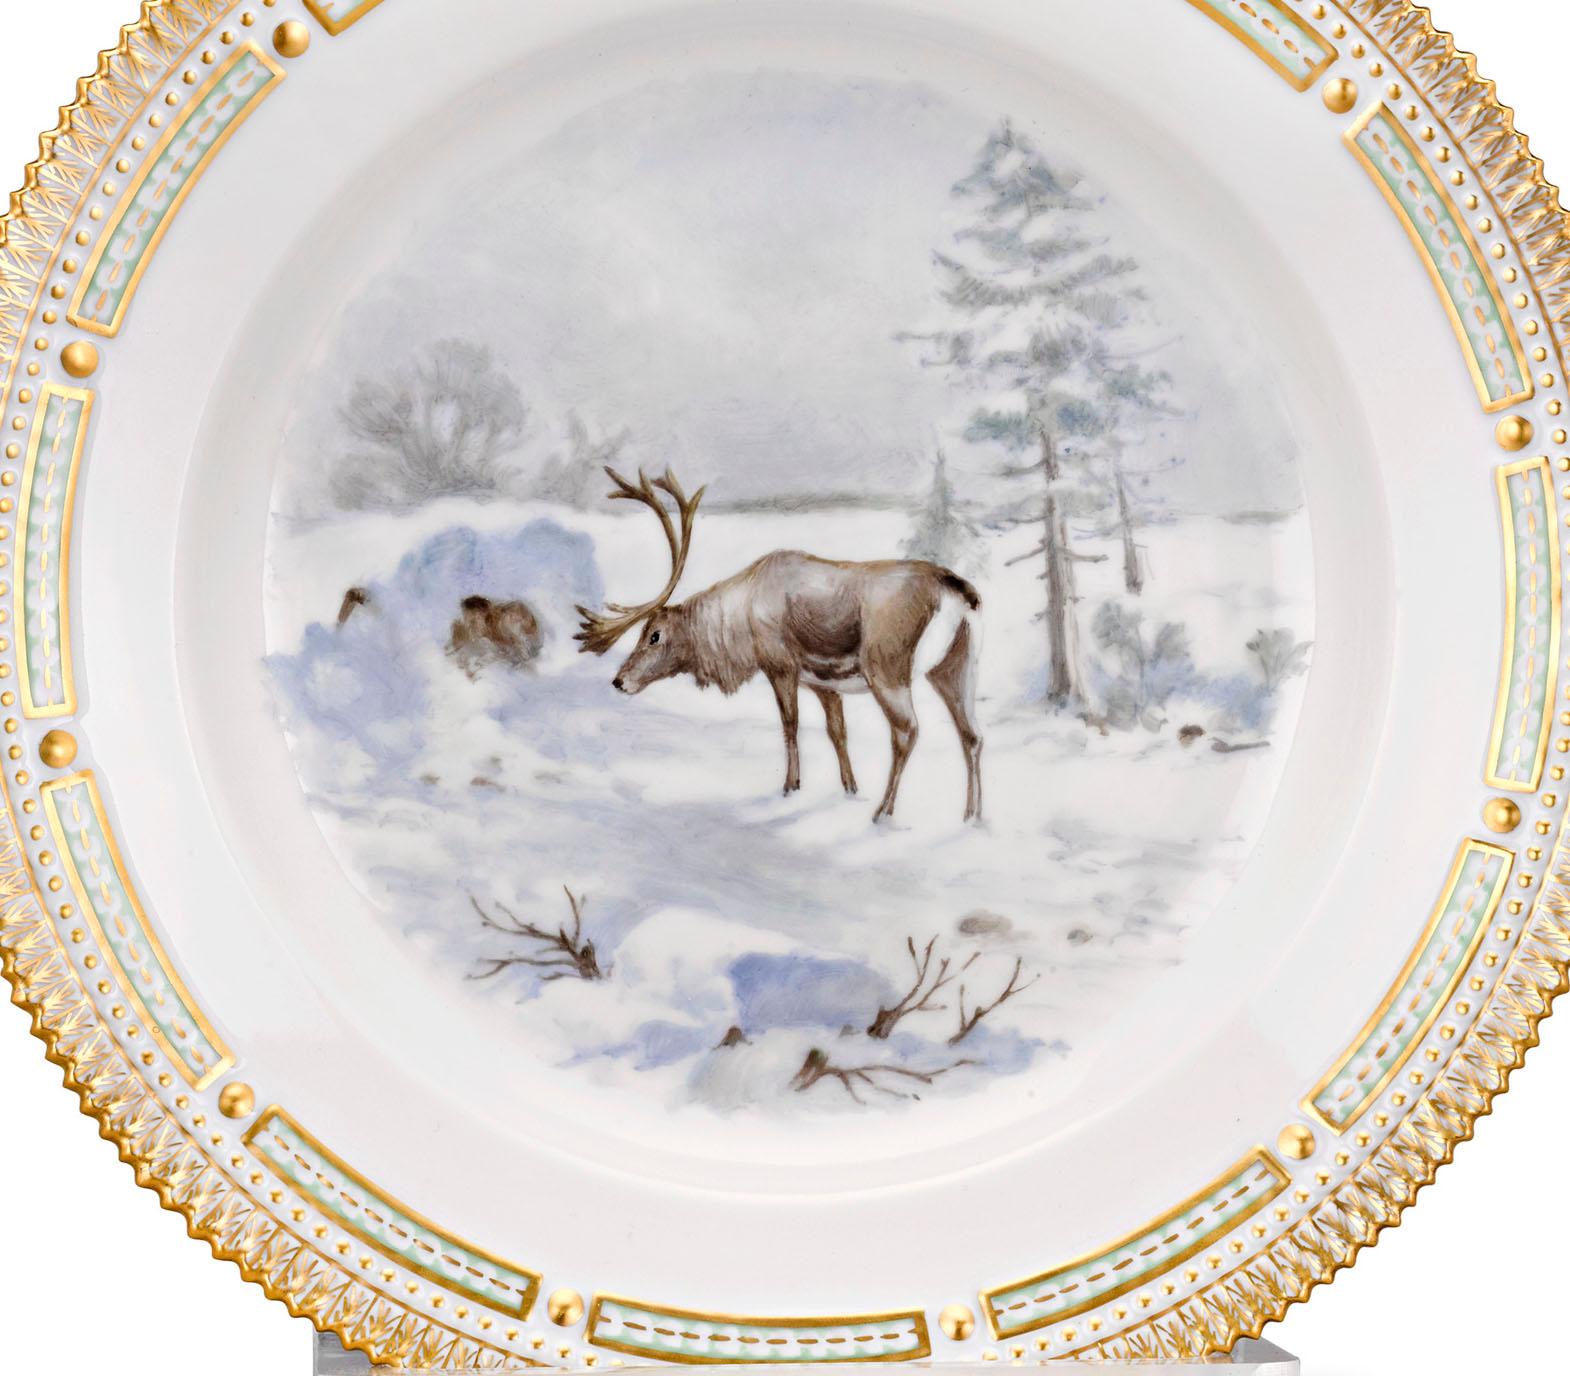 Un renne est la vedette de la scène enneigée de cette assiette en porcelaine extraordinairement rare. Fabriqué par Royal Copenhagen, il fait partie de la célèbre collection Flora Danica. Flora Danica est connue dans le monde entier pour ses